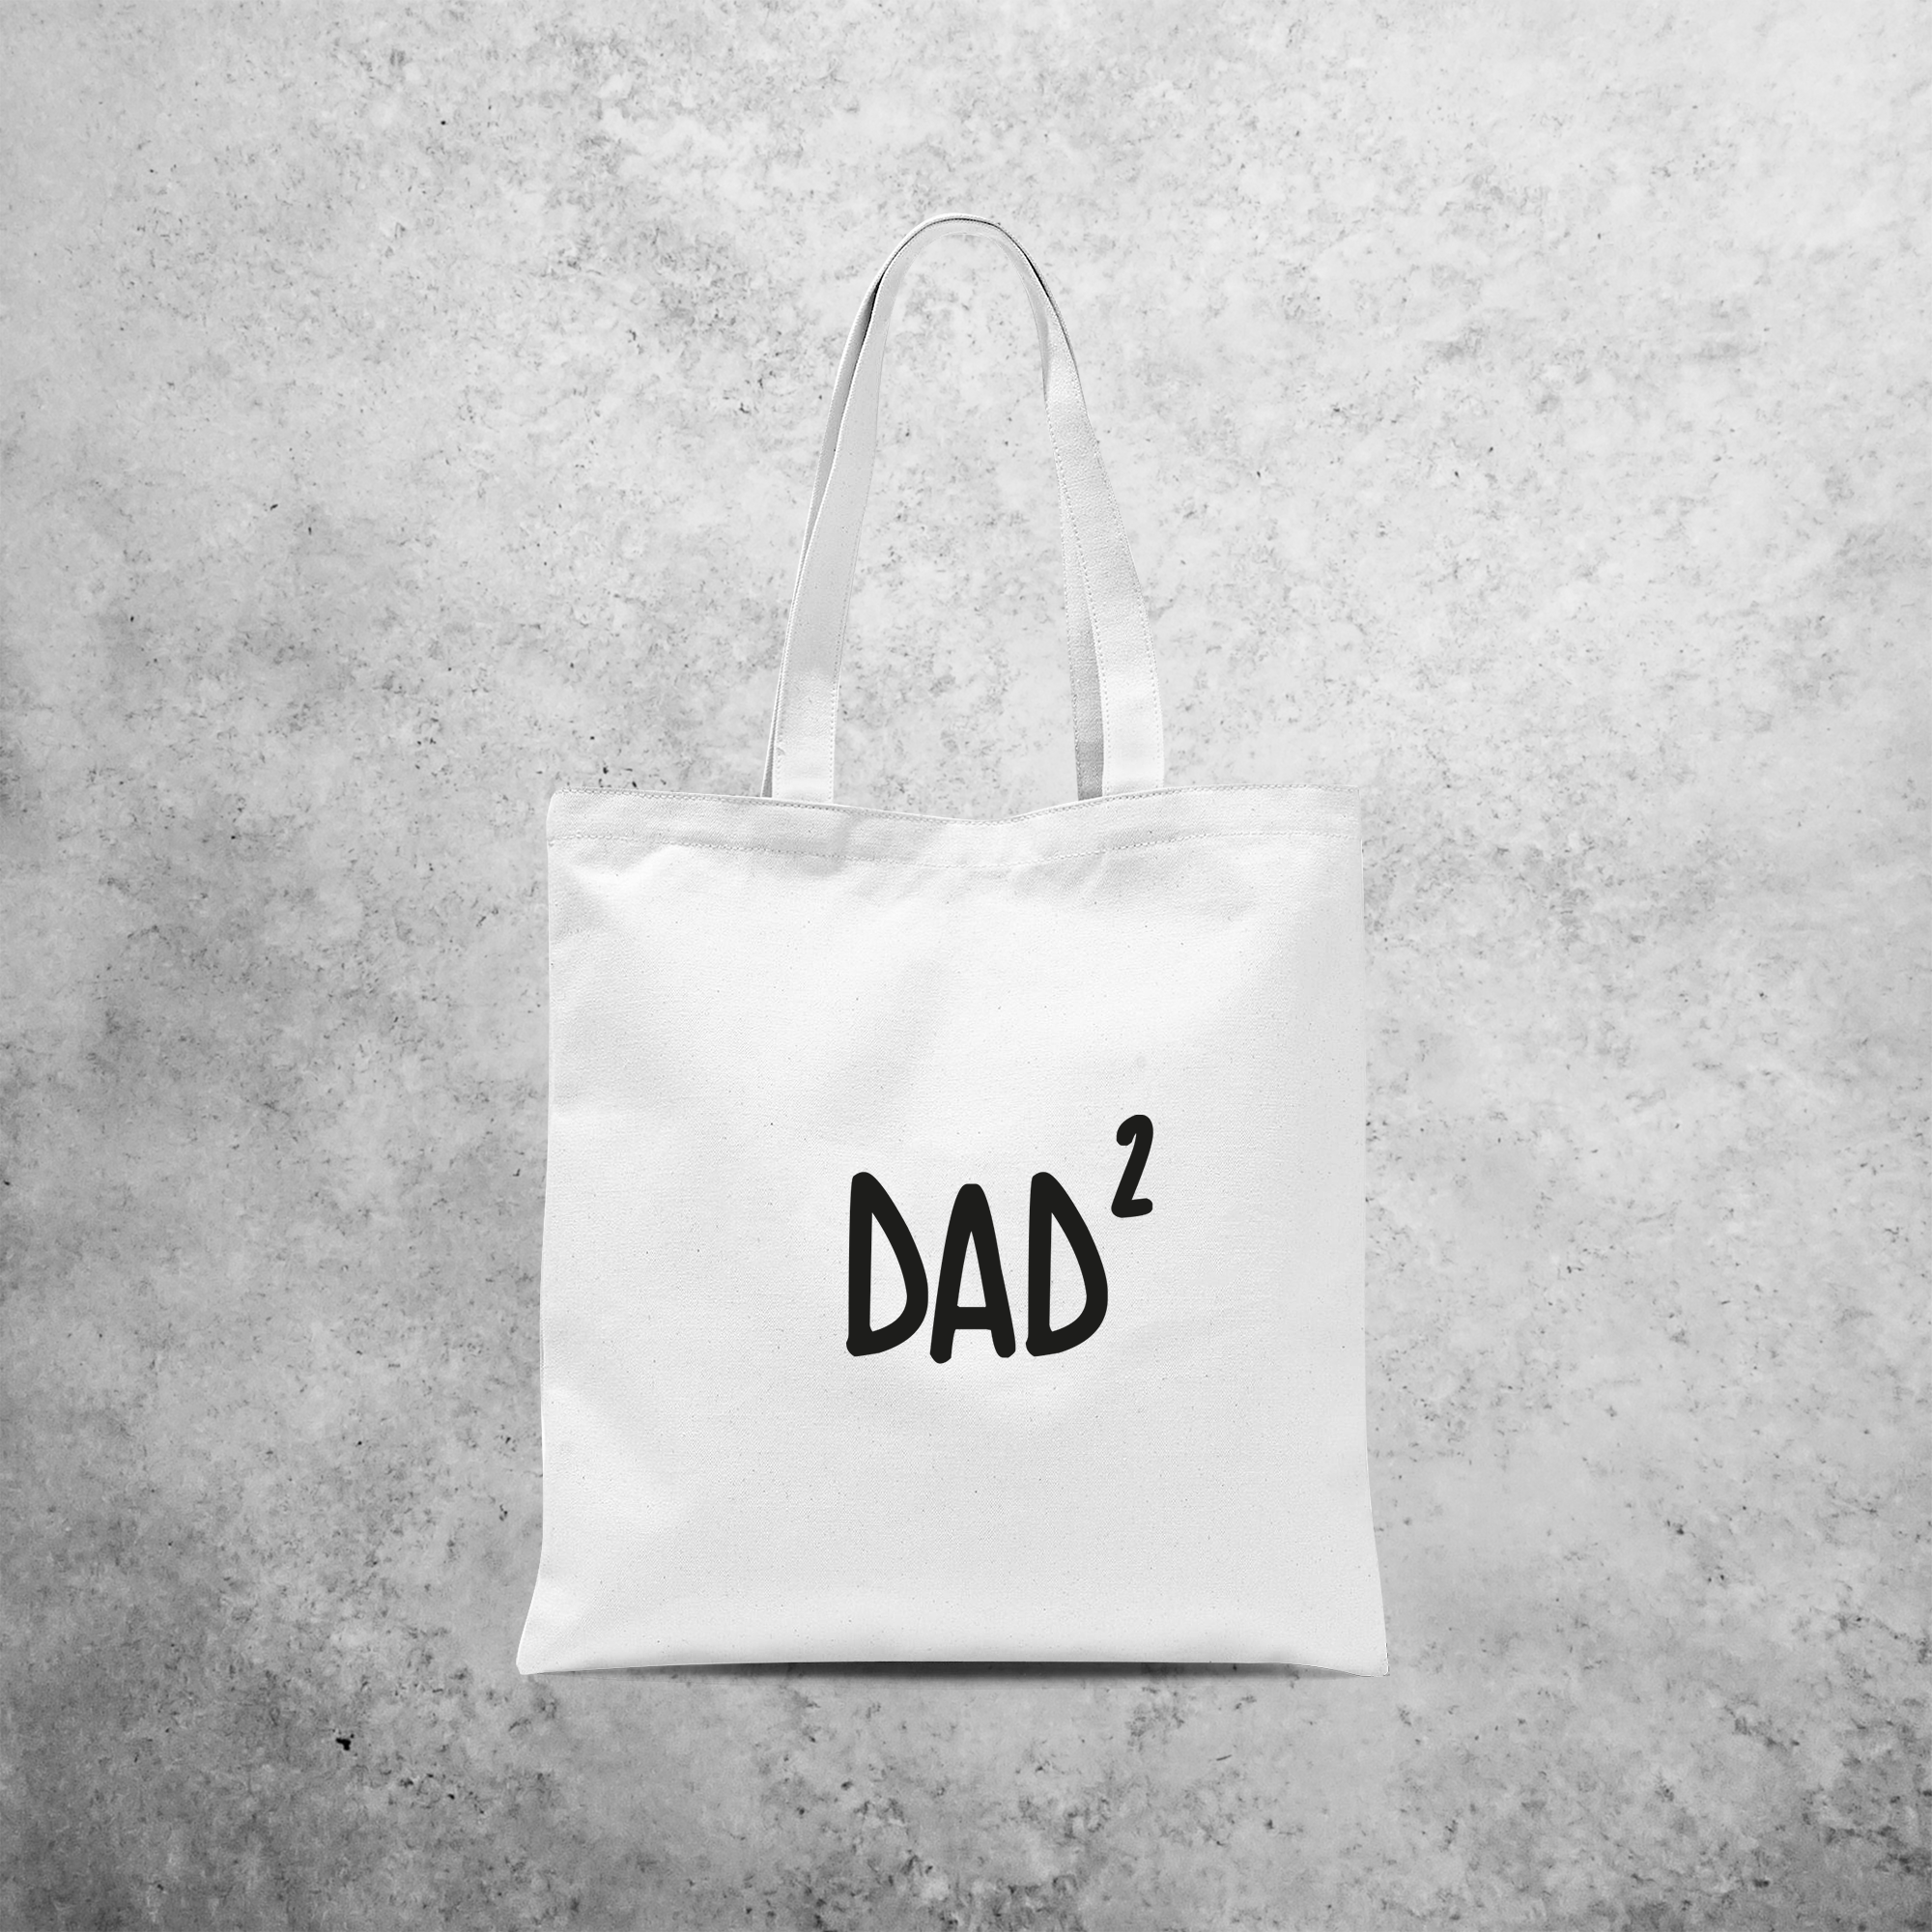 'Dad' tote bag